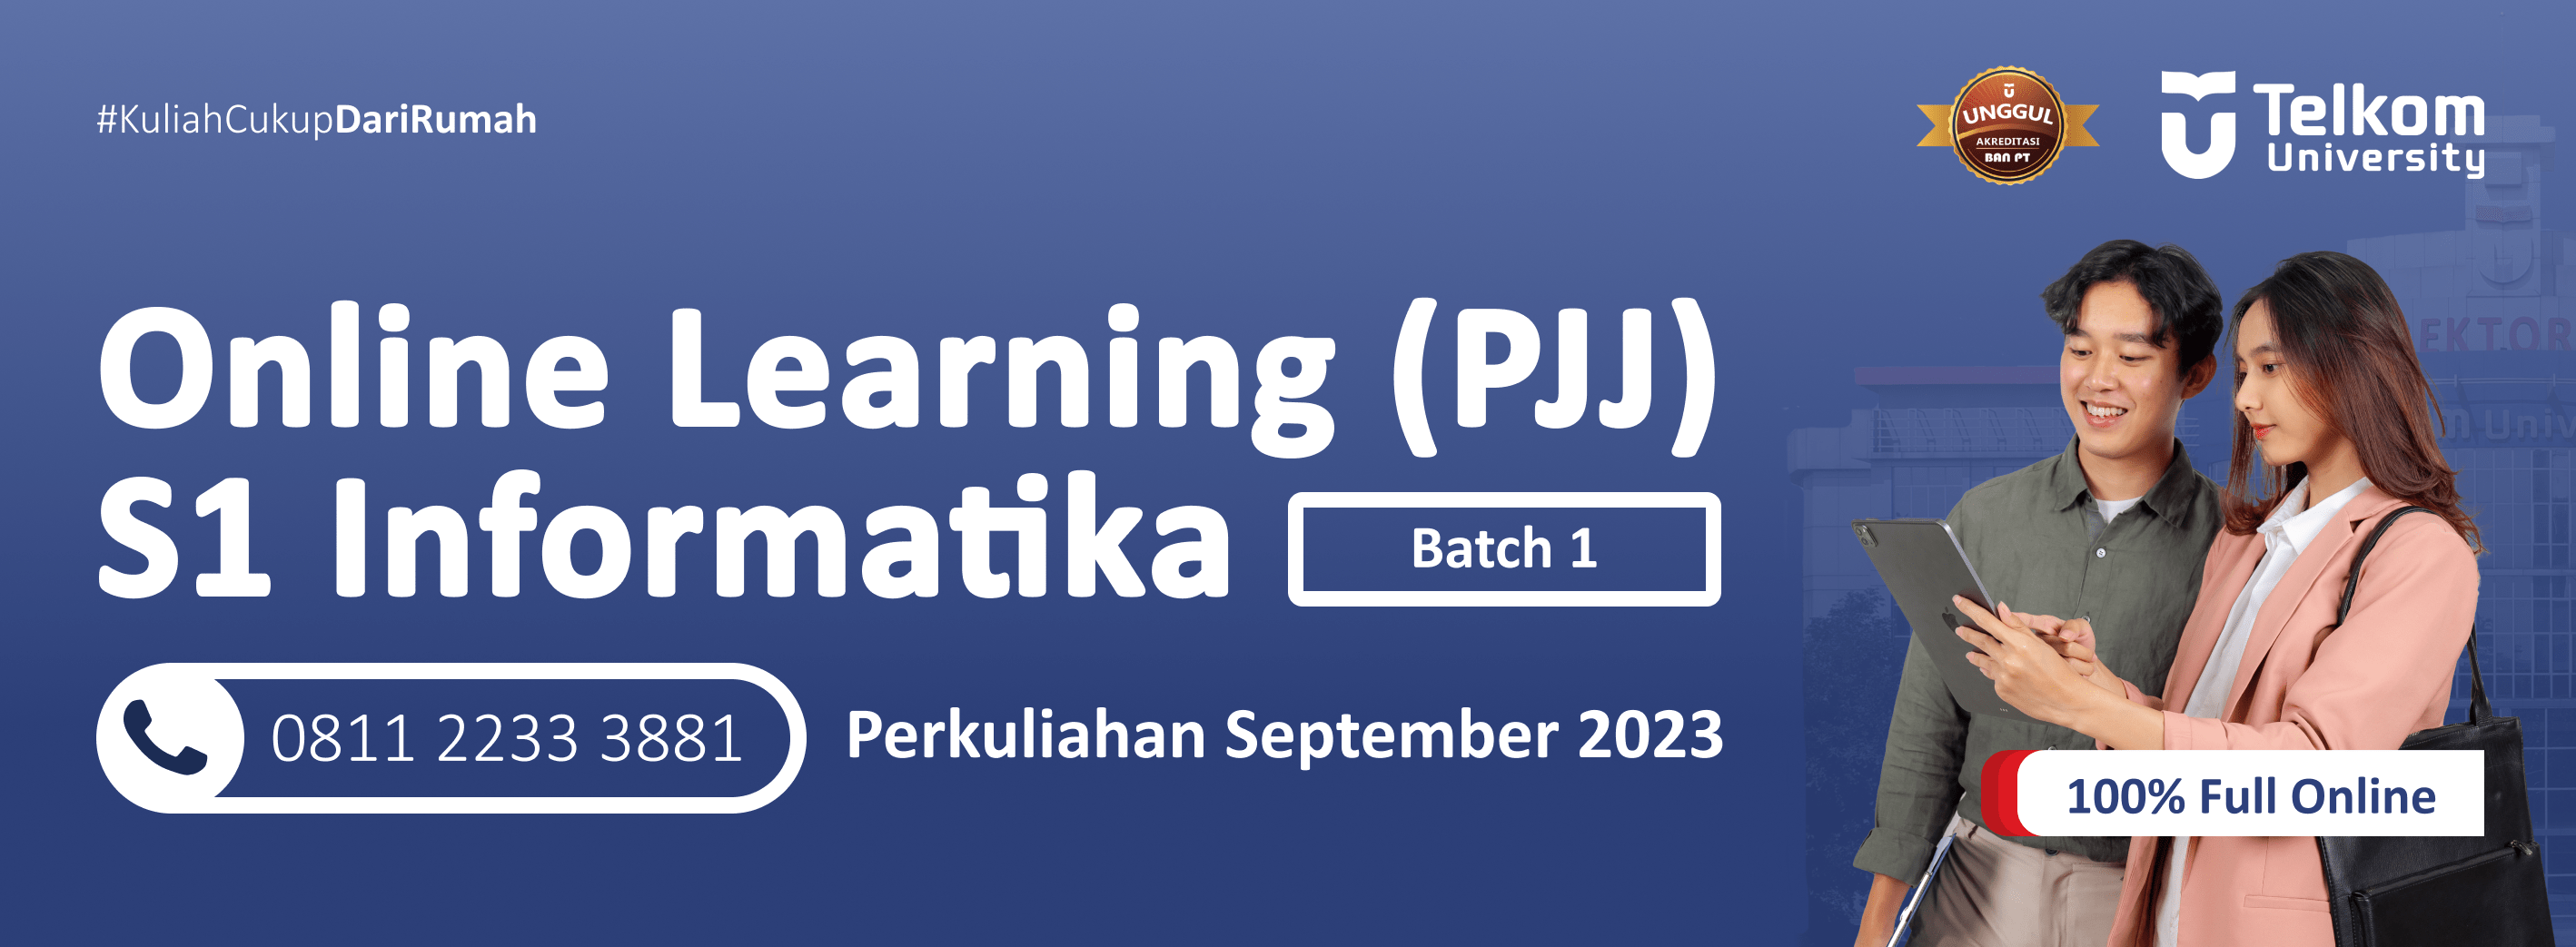 Webbanner-Online-Learning-PJJ-Telkom-University-2023